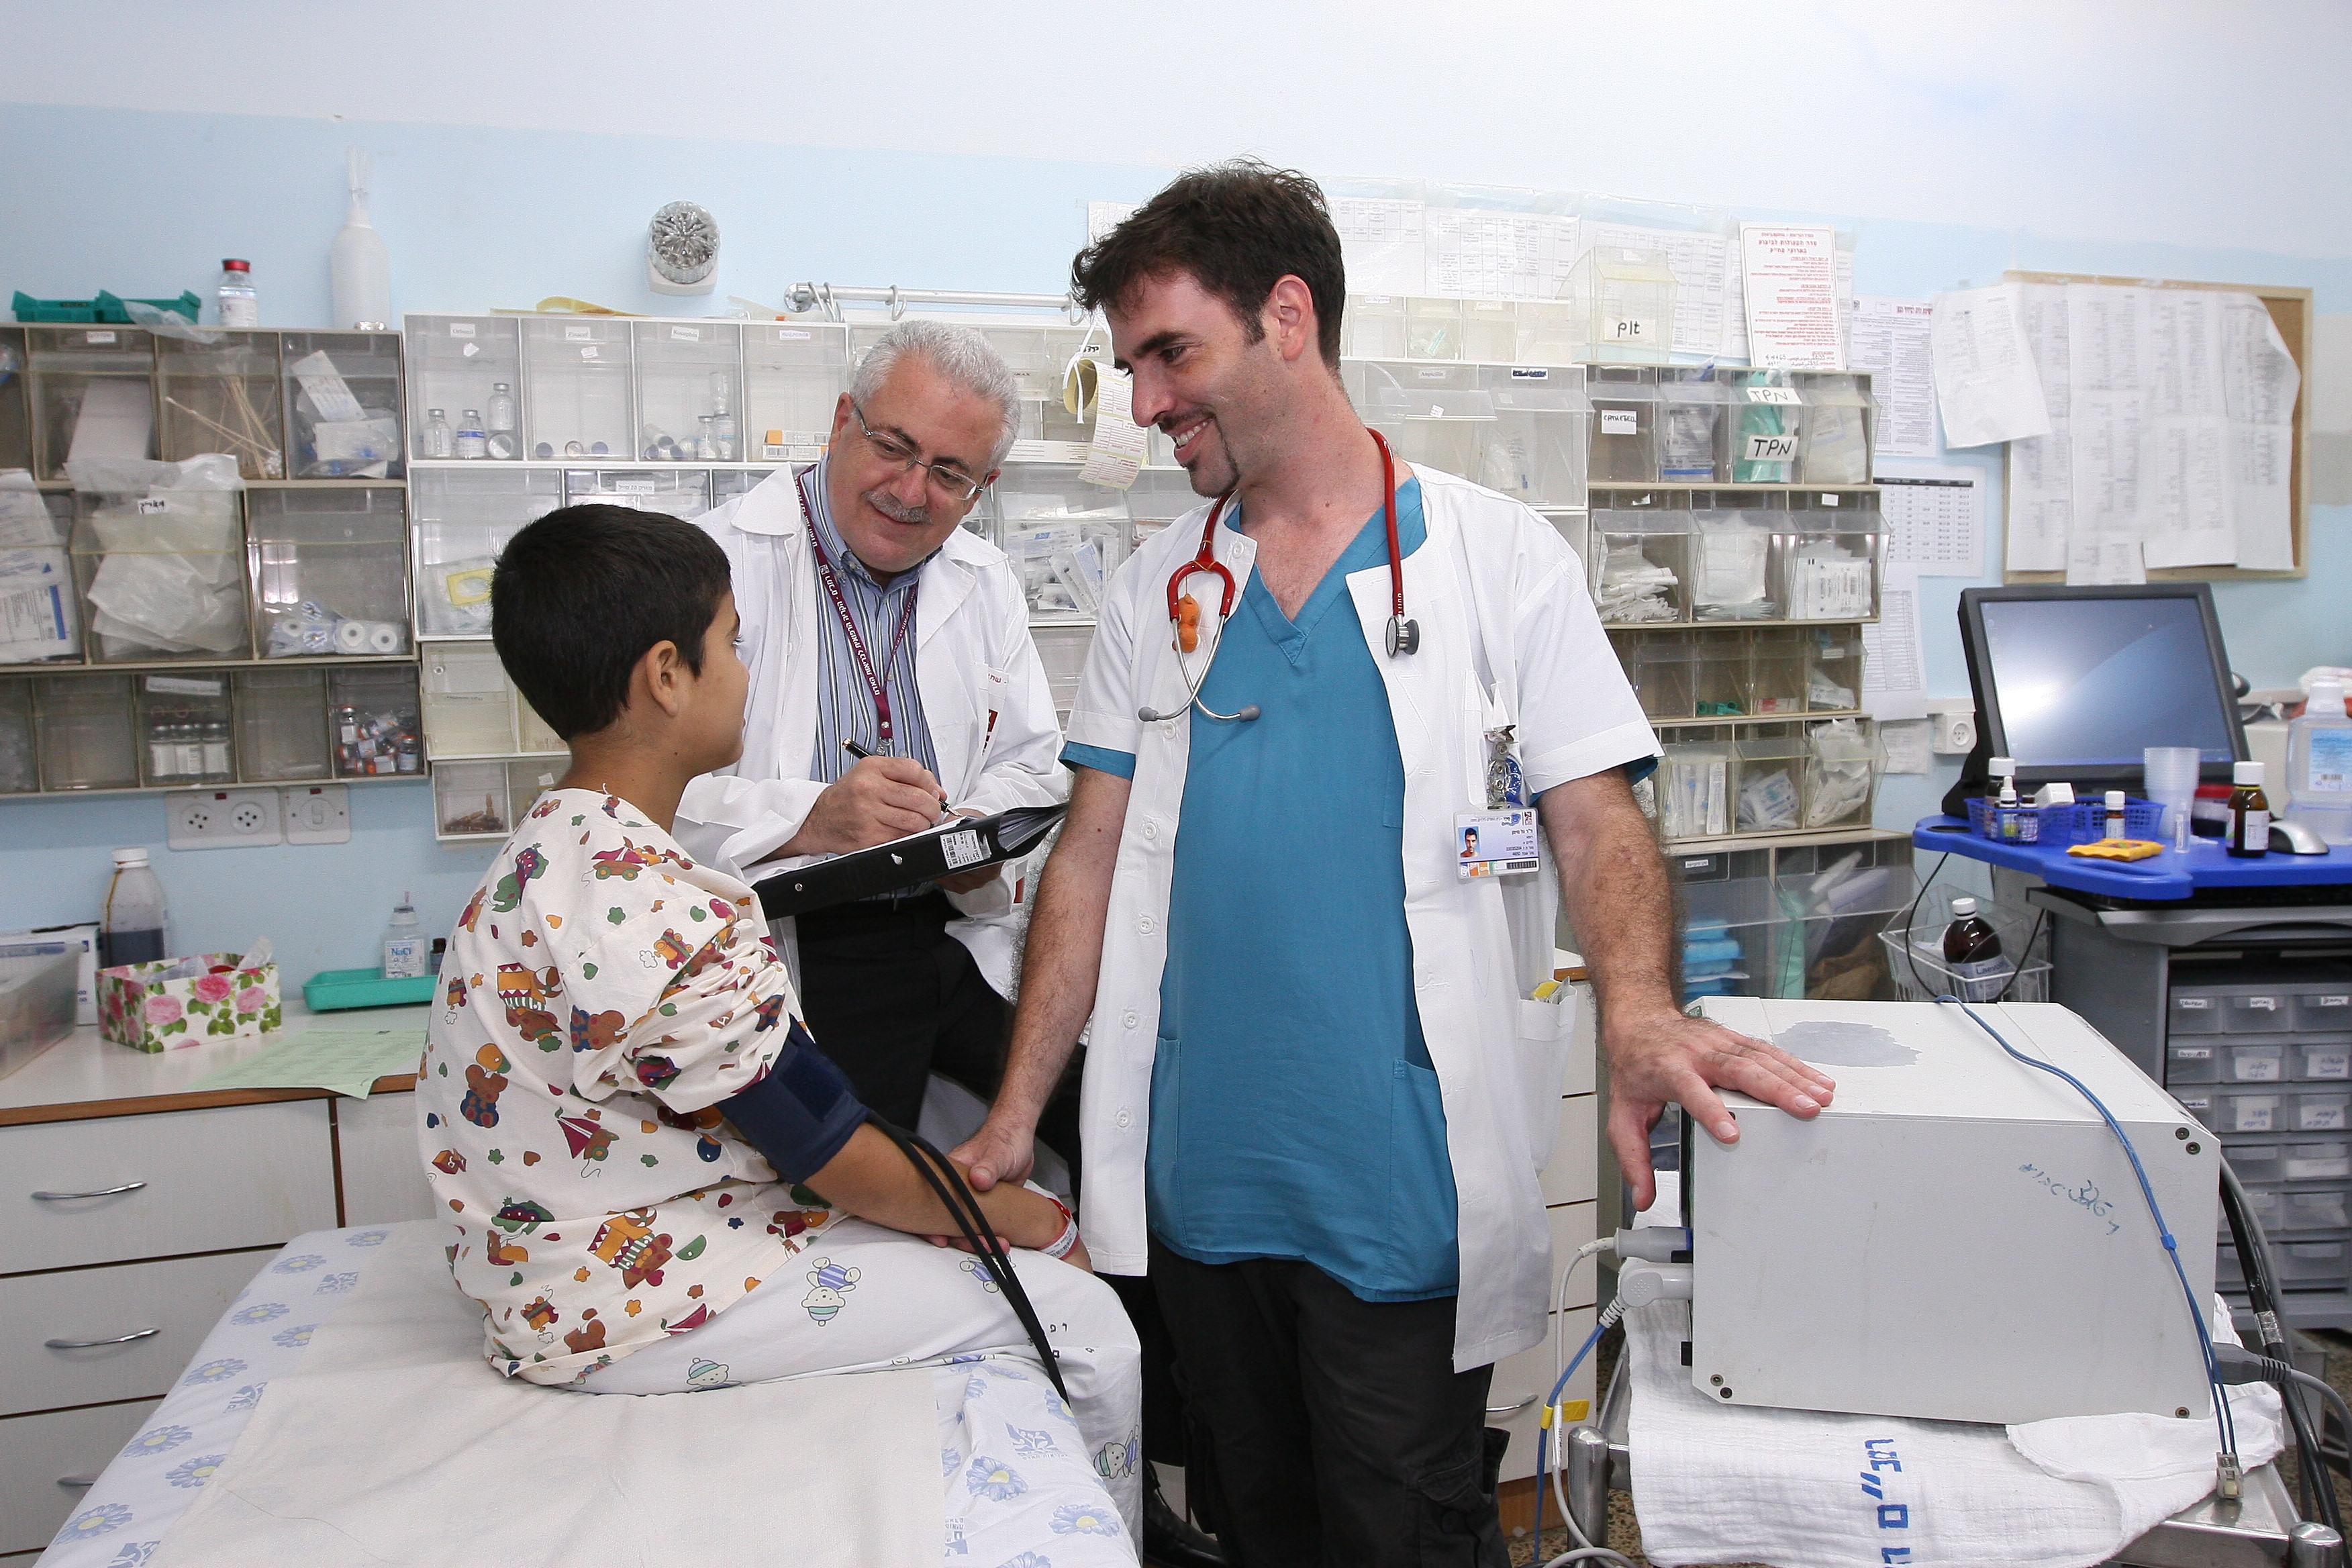 פרופ' נעים שחאדה (משמאל) וד"ר גל נוימן במרפאה ברמב"ם. צילום: פיוטר פליטר.